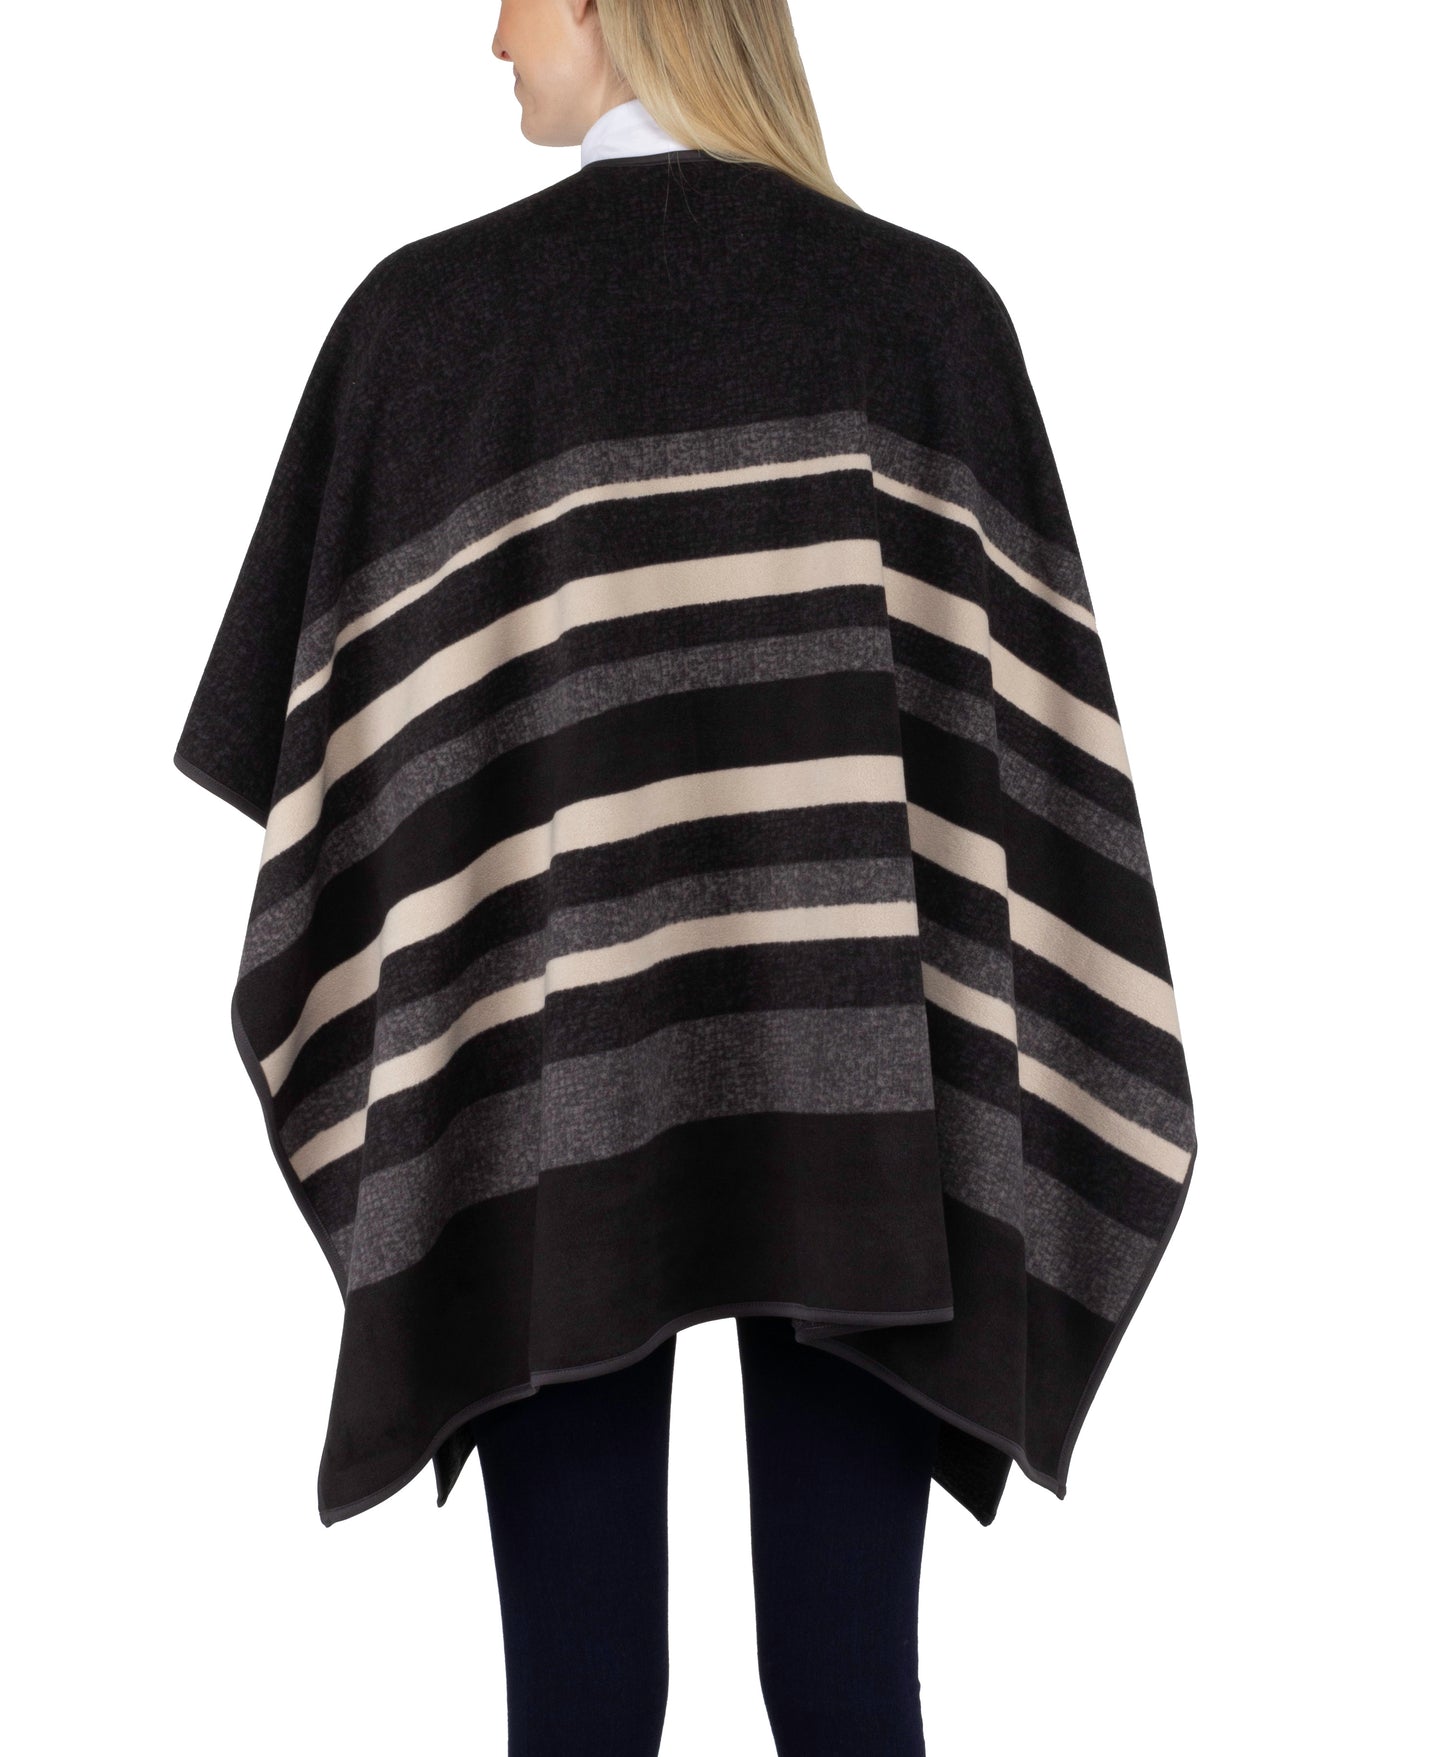 Black with Smoke and Creme Stripe Women's Reversible Fashion Wrap